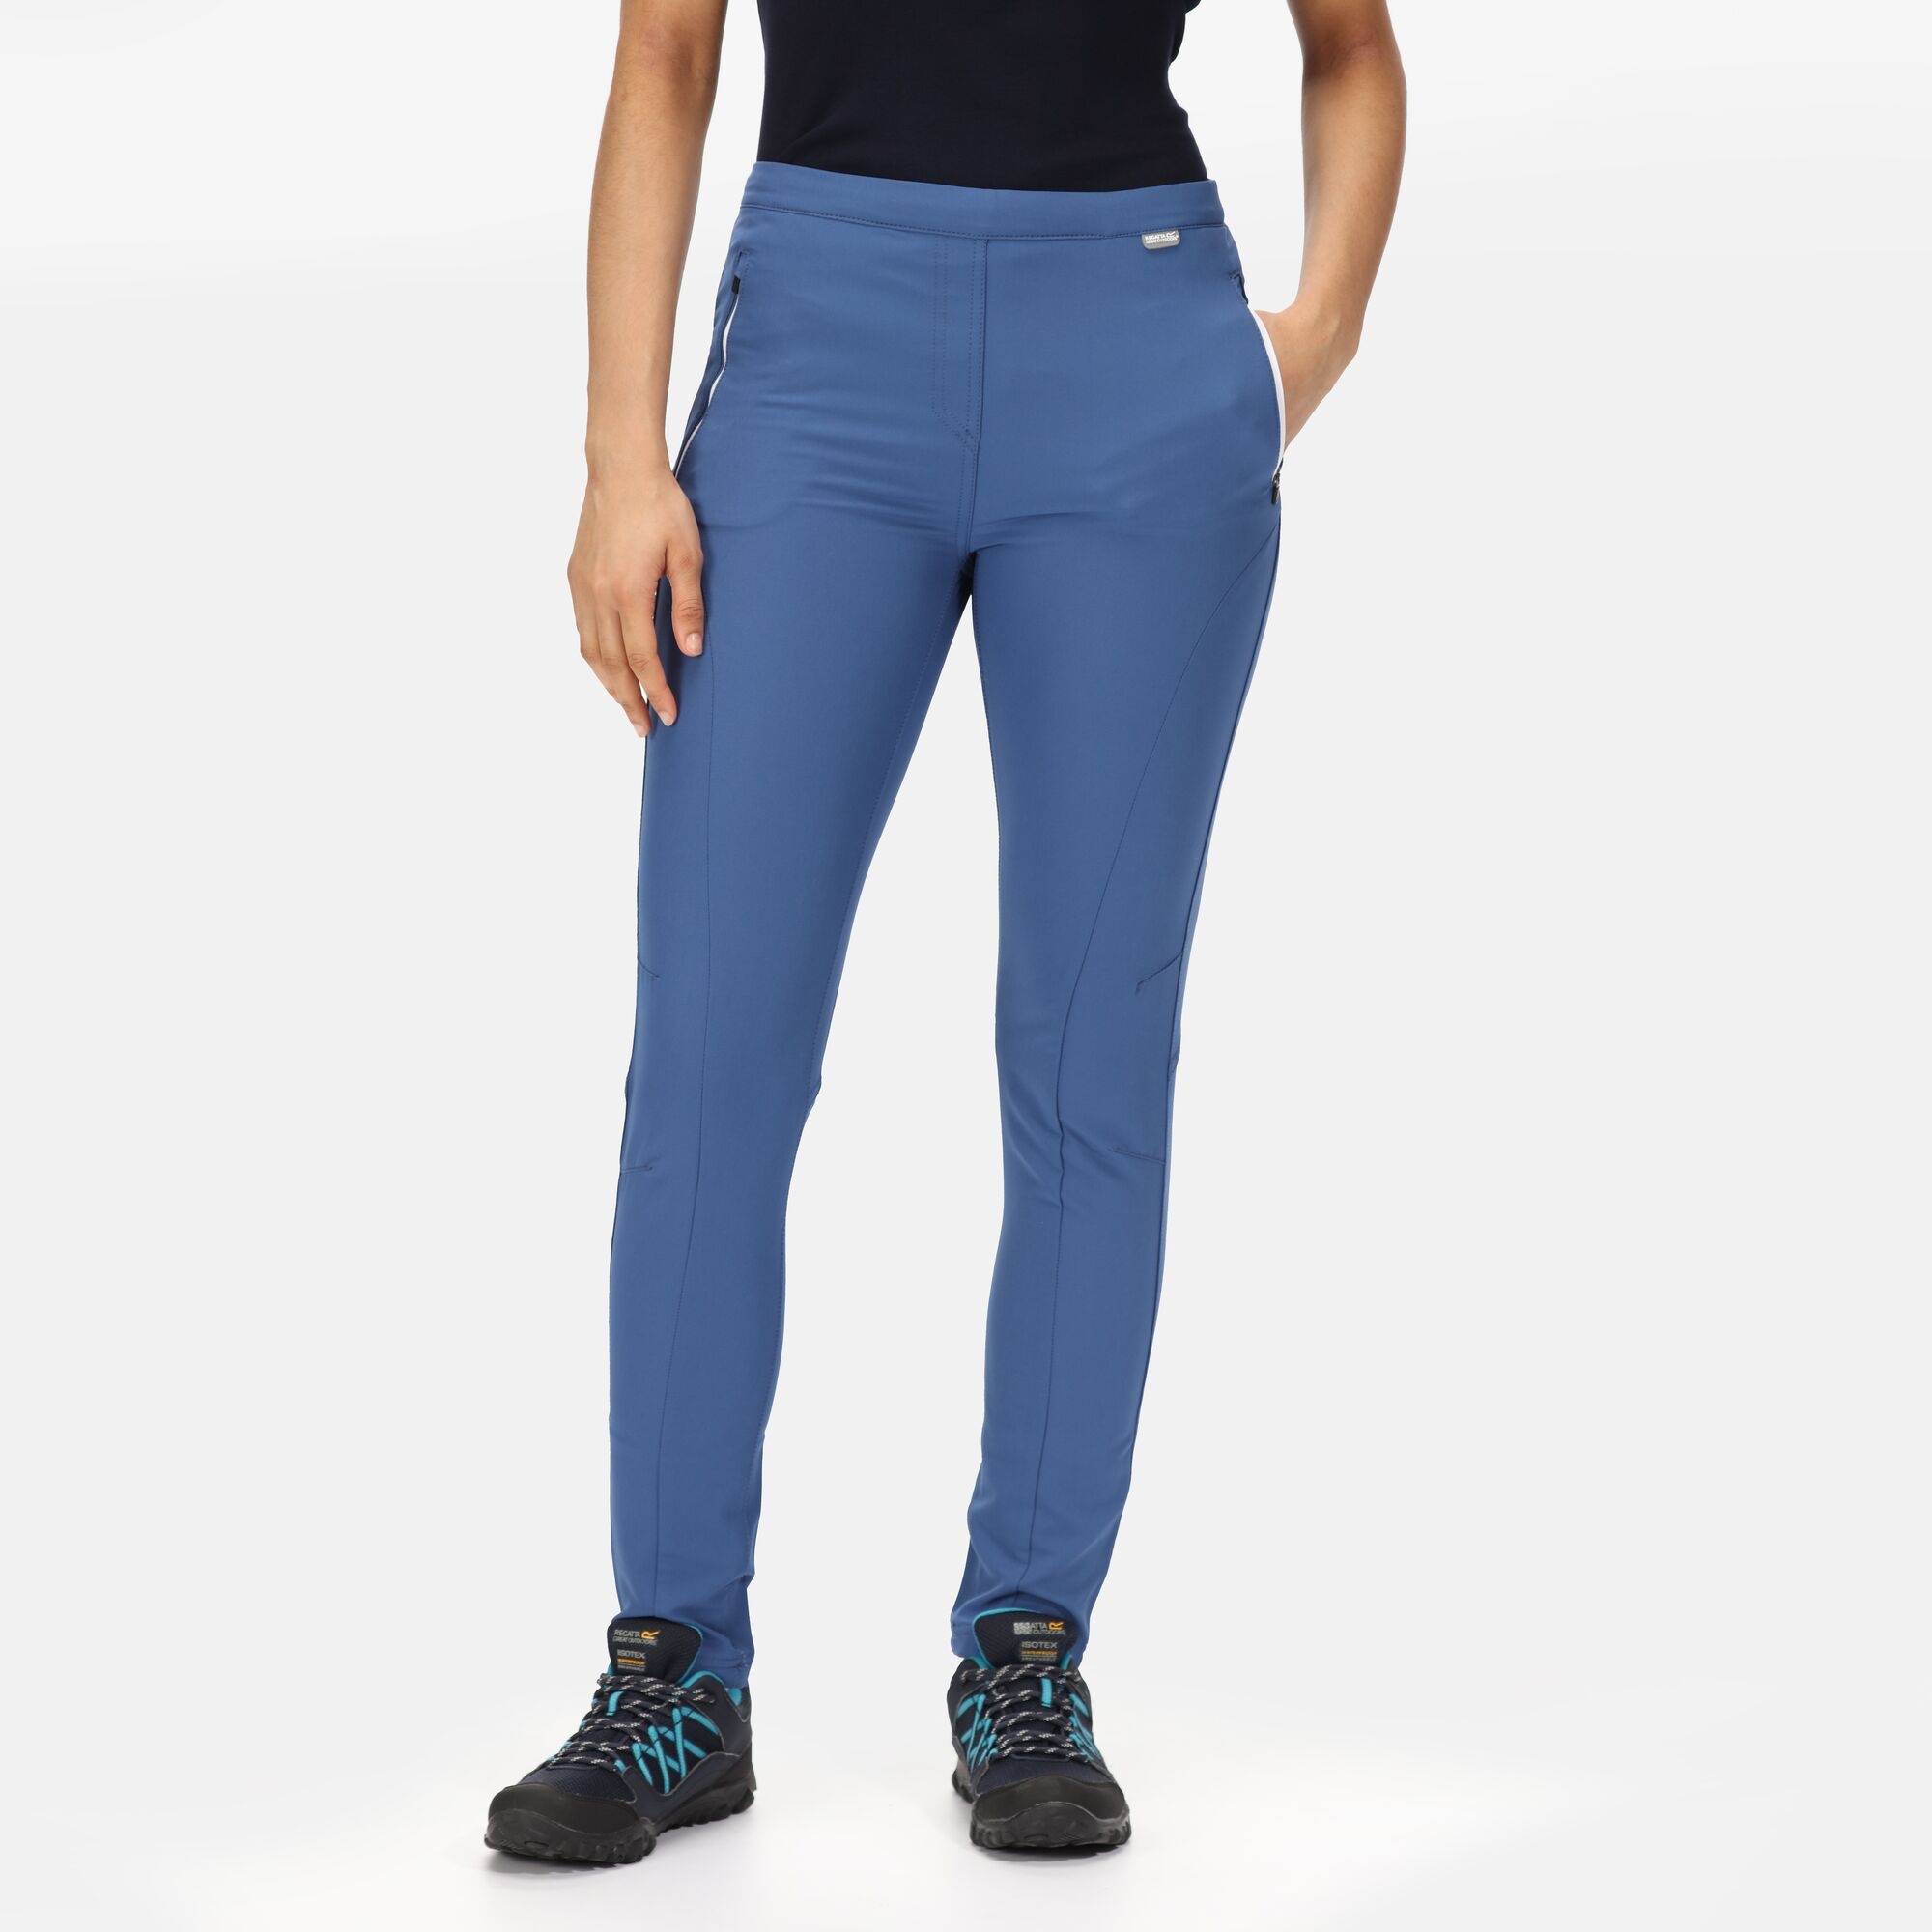 Regatta Women's Water-repellent Pentre Stretch Walking Trousers Dusty Denim, Size: 14 Short from Regatta IE